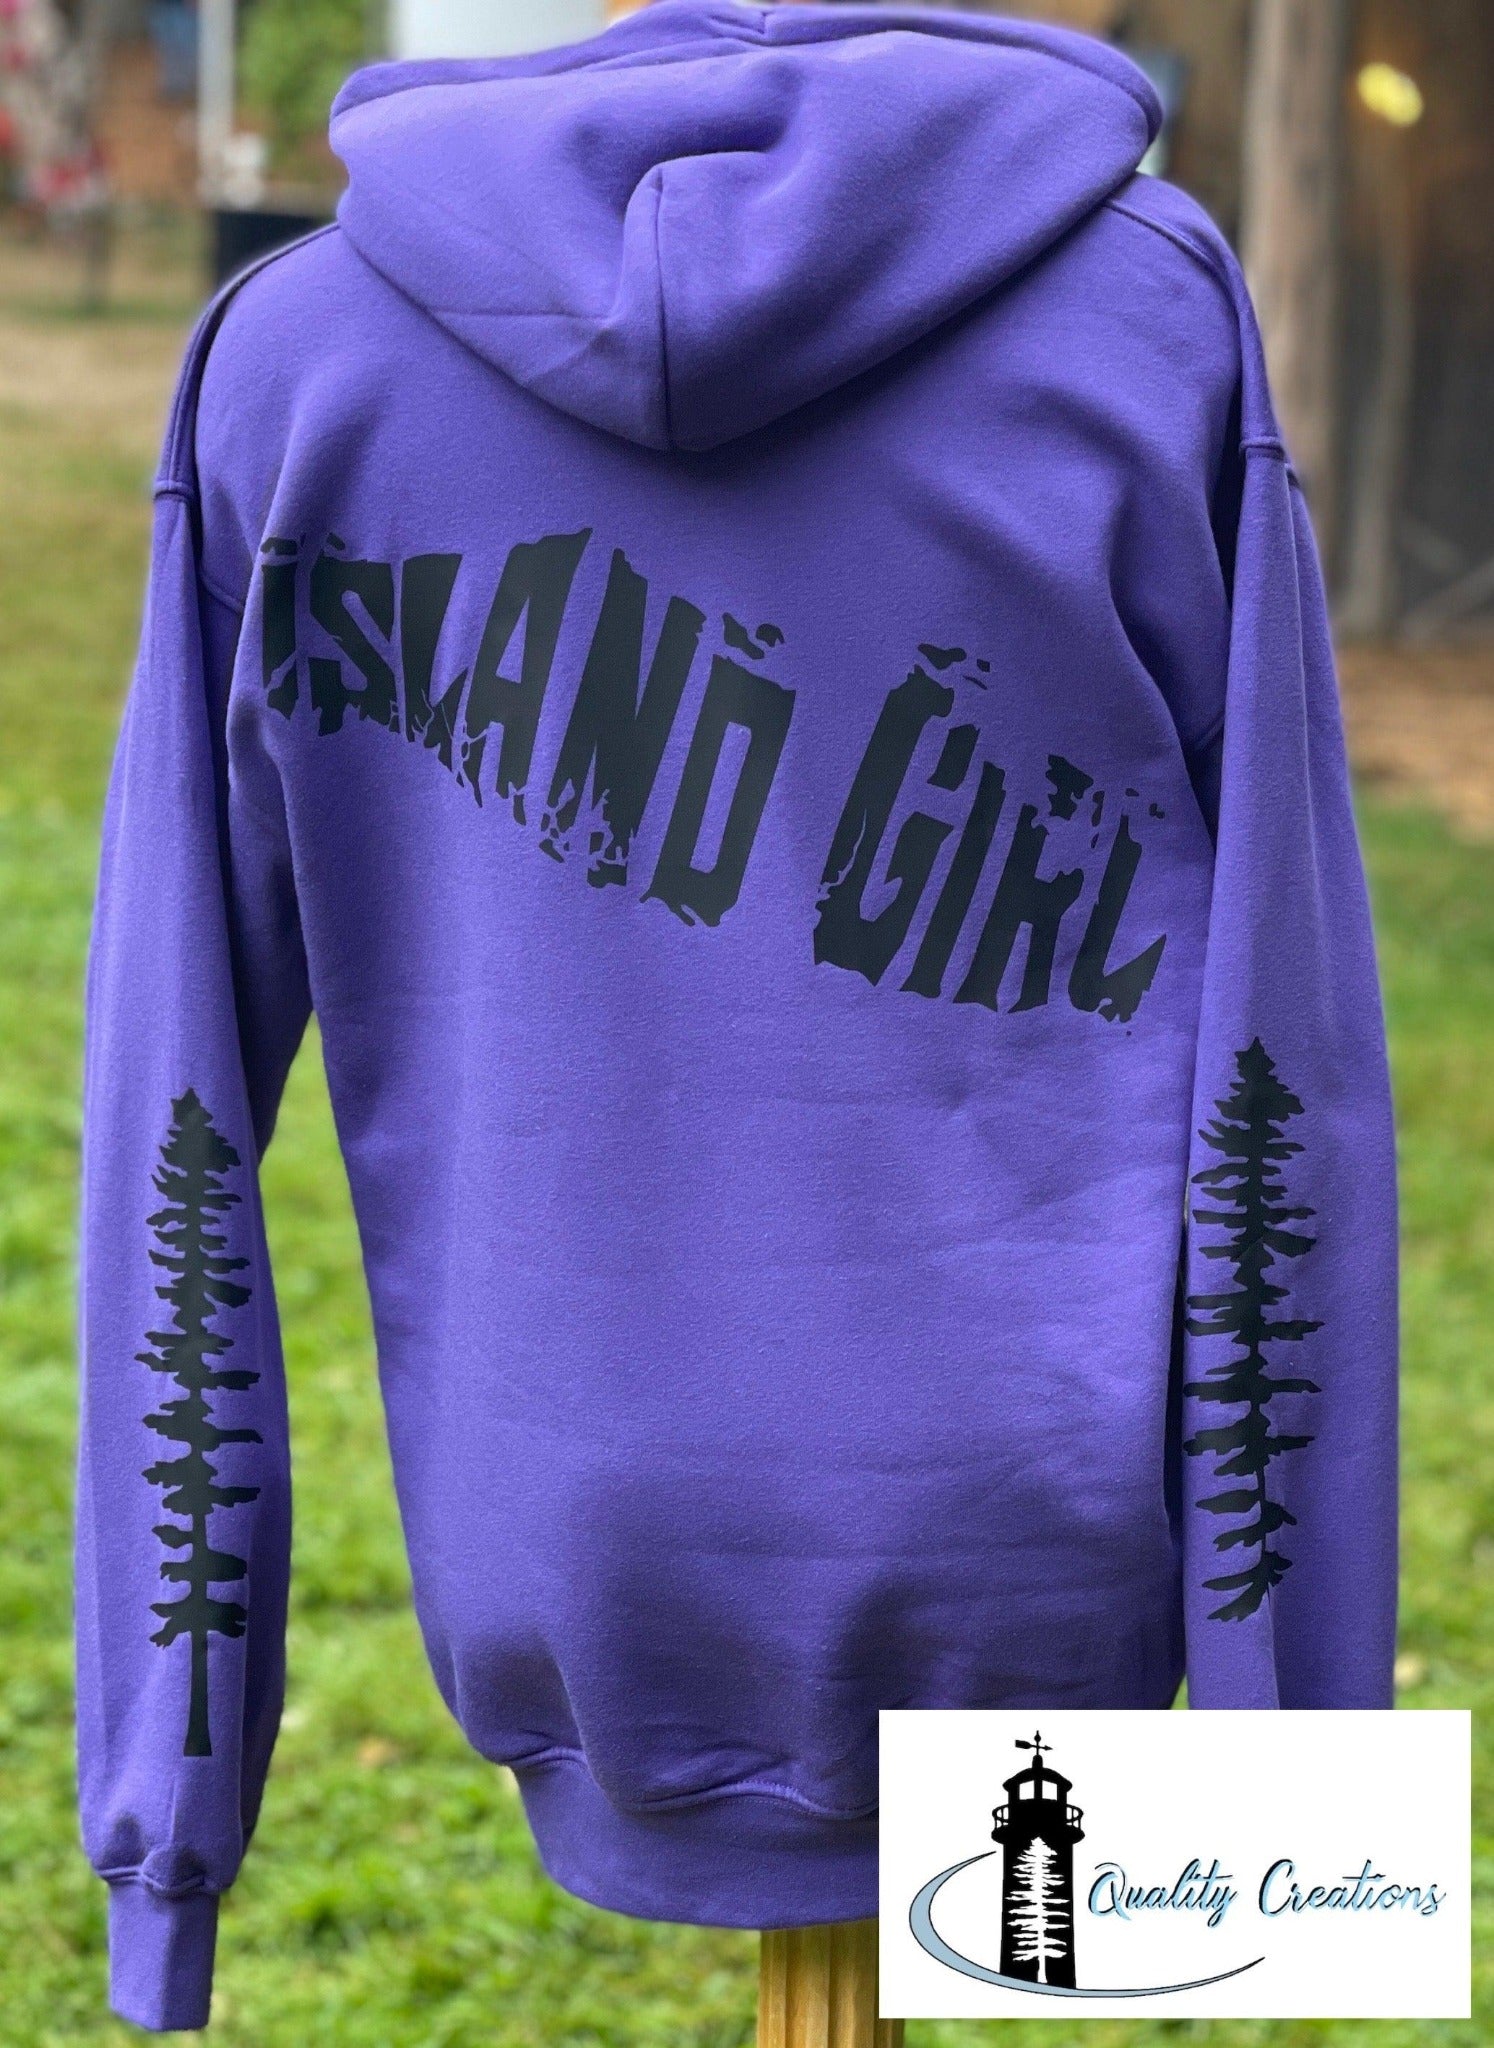 Island Girl Hoodie - Quality Creations